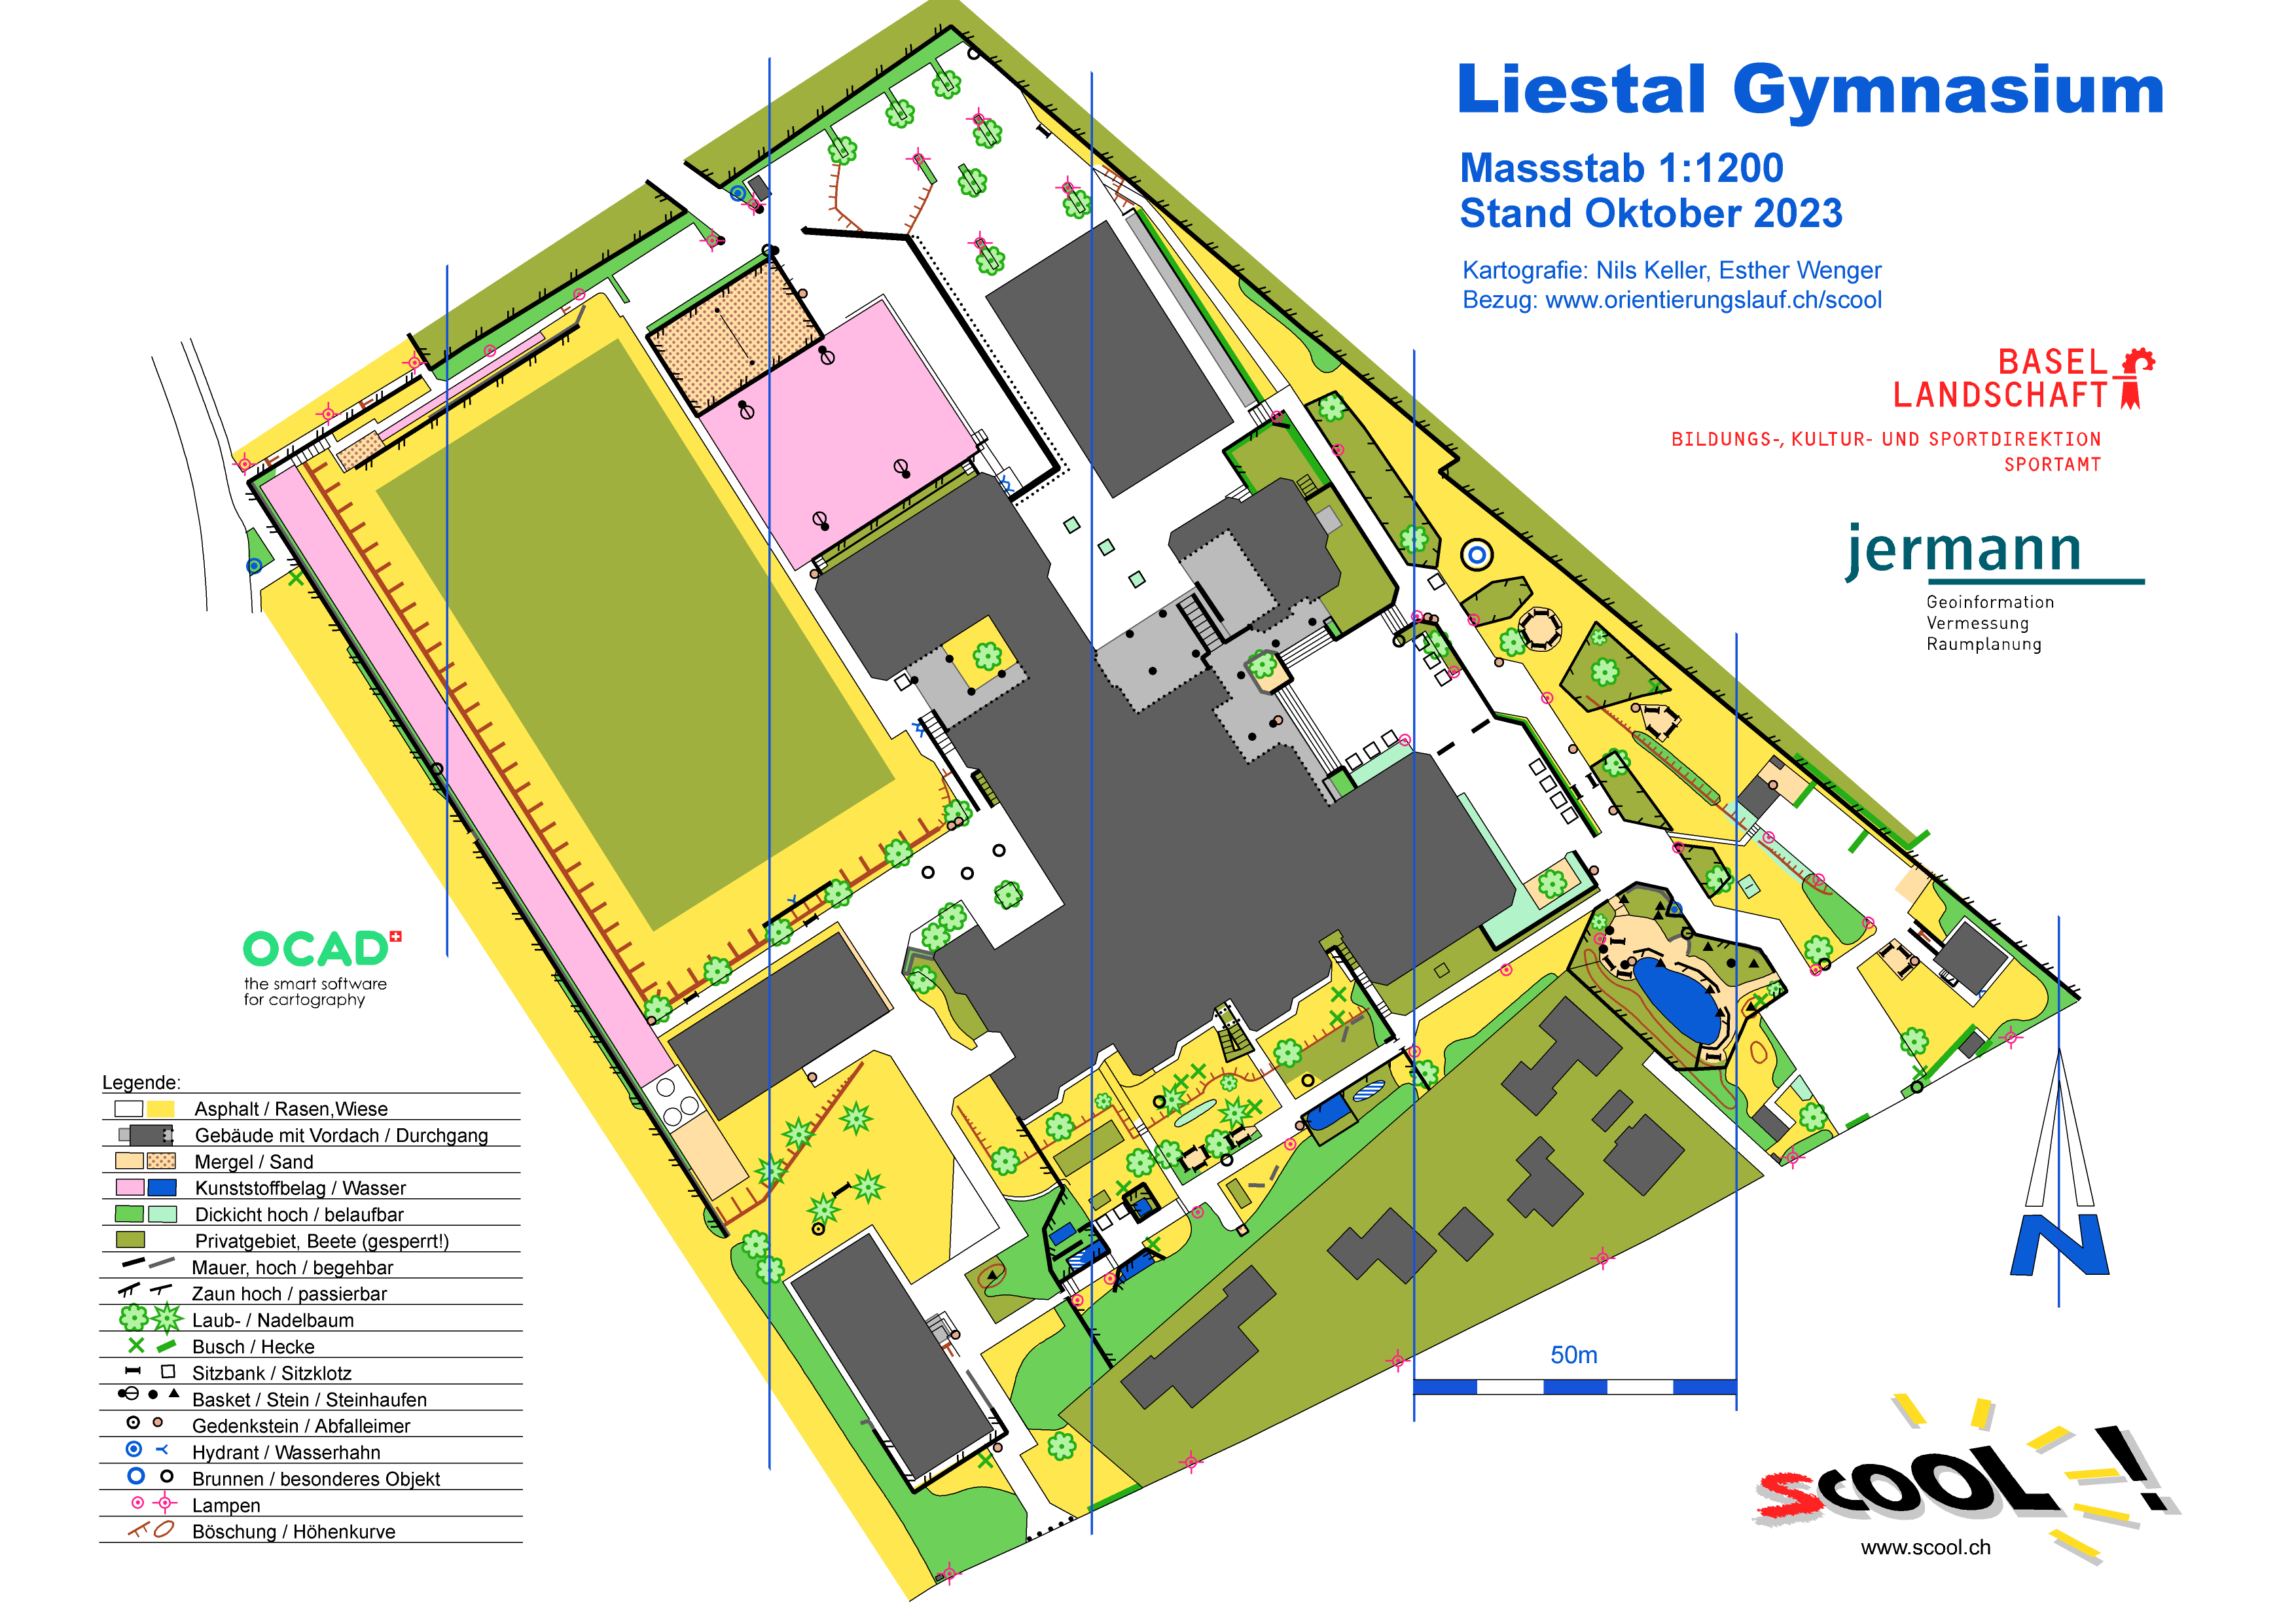 Liestal Gymnasium